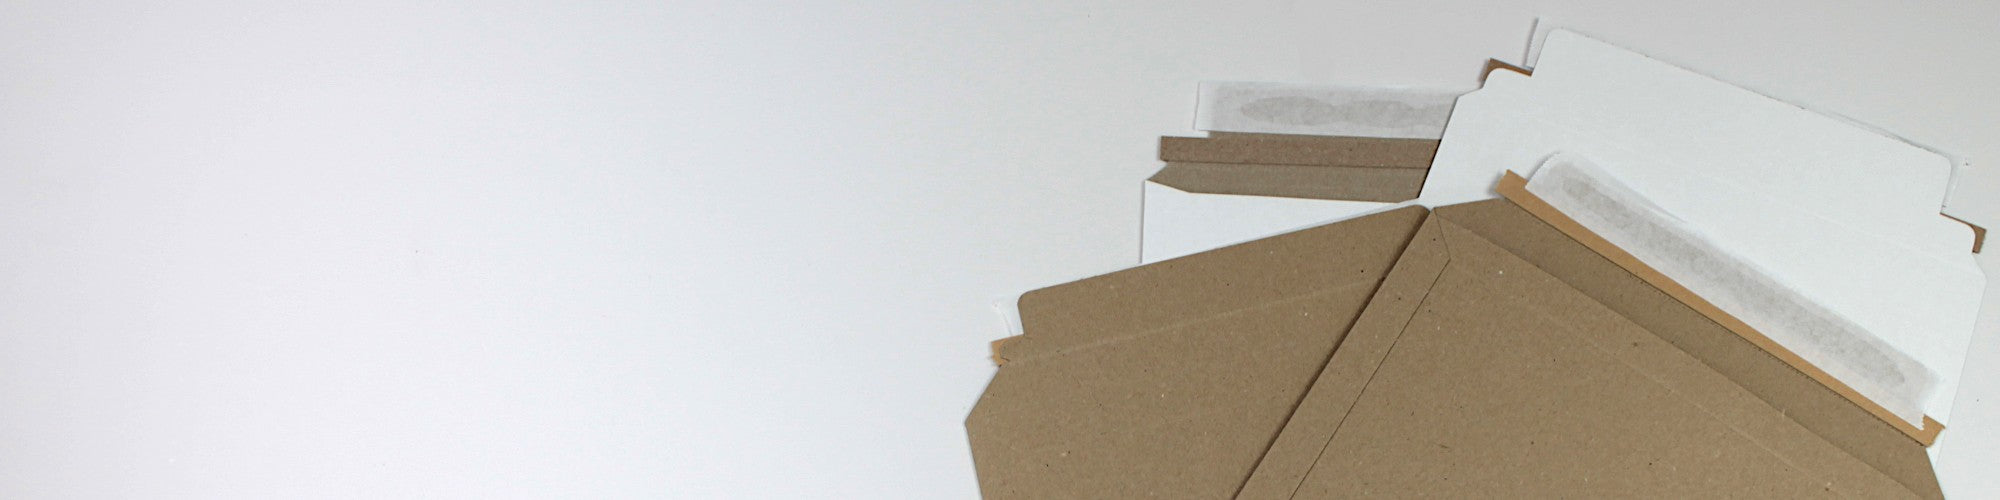 Cardboard Envelopes